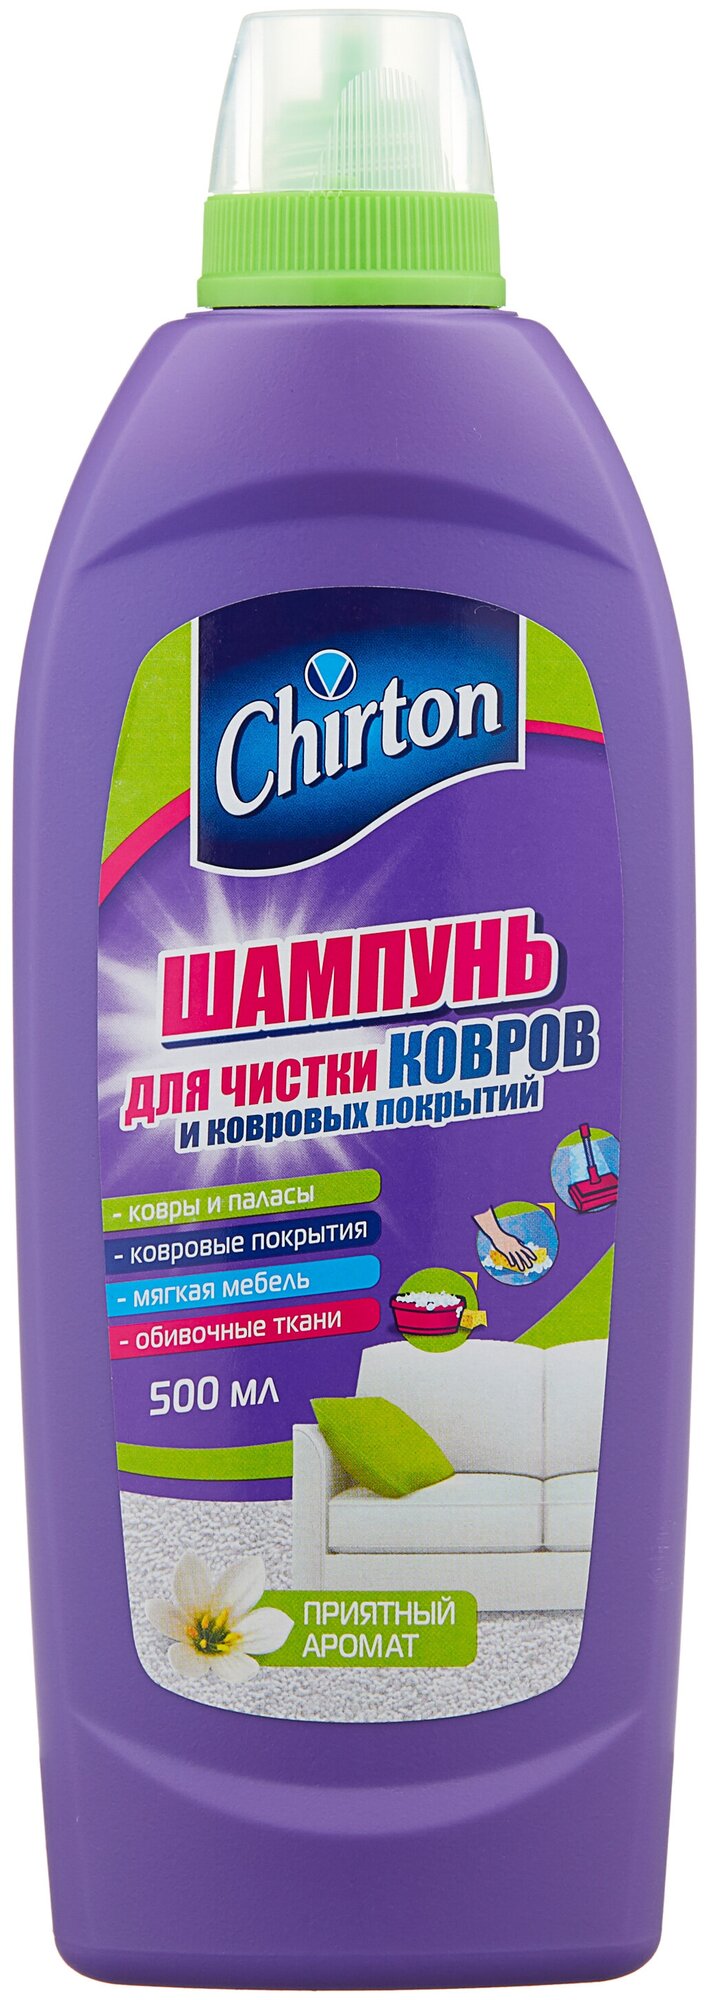 Chirton Шампунь для чистки ковров и ковровых покрытий, 0.5 л